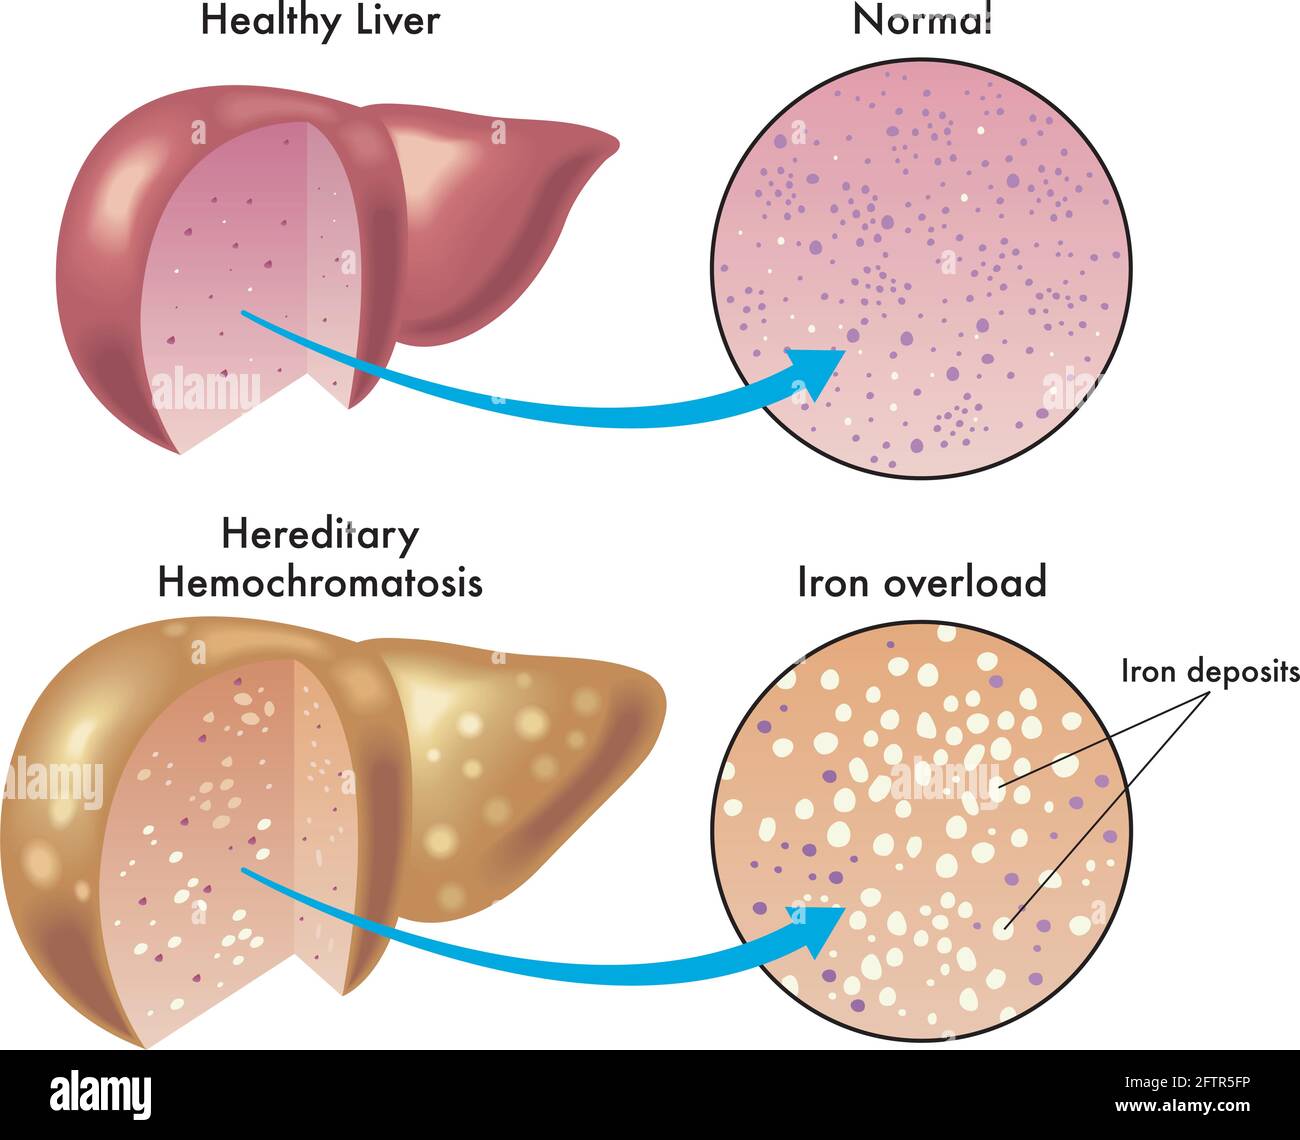 L'illustrazione medica mostra la differenza tra un fegato sano e uno con emocromatosi ereditaria, con dettagli ingranditi e annotazioni. Illustrazione Vettoriale